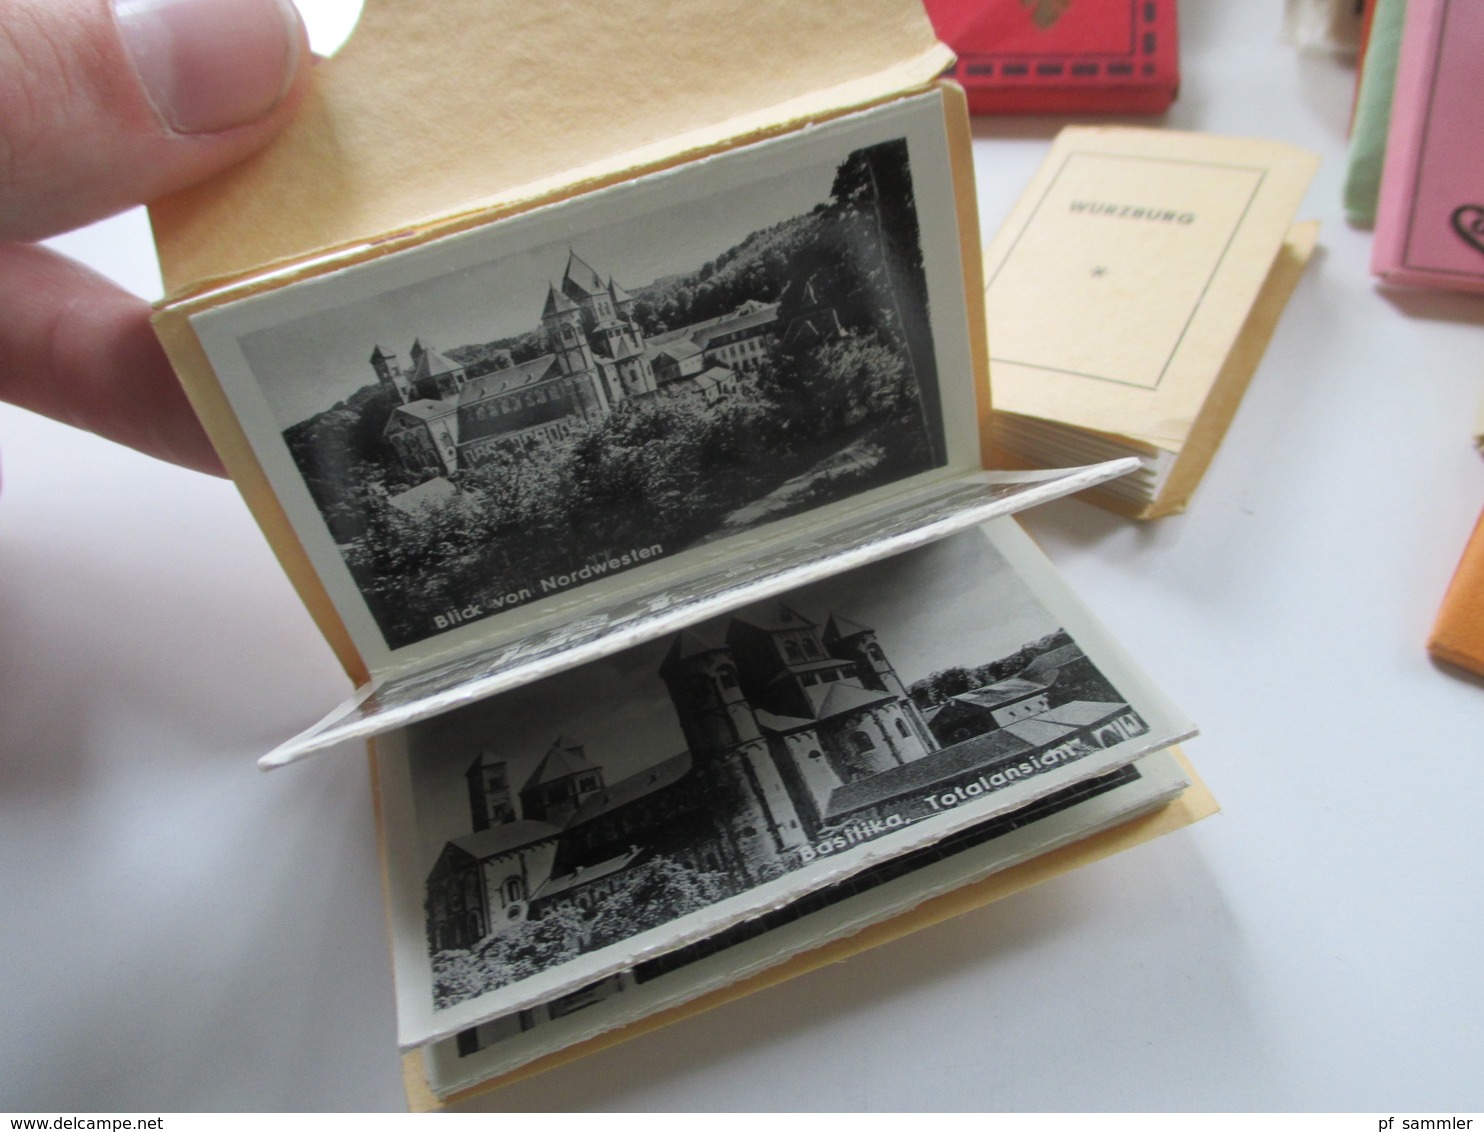 40 Leporellos Kleine Fotos 1940 / 50er Jahre! Deutschland / Italien / Österreich / Luxemburg Usw. Interessanter Posten!! - 100 - 499 Postcards